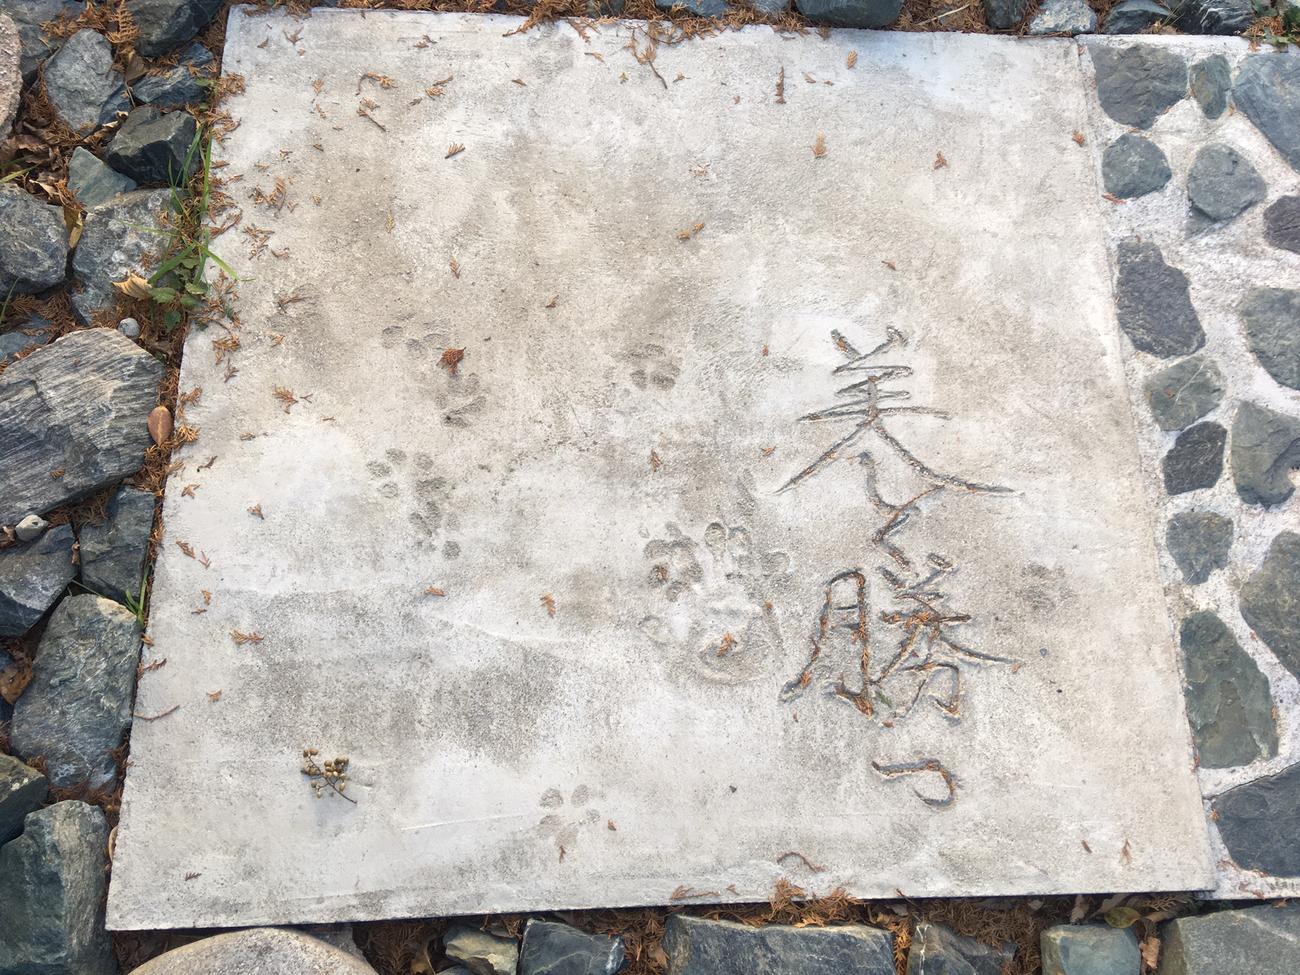 丸山顕志氏が整備した「OLYMPIC　GARDEN」の石畳に記された「美しく勝つ」